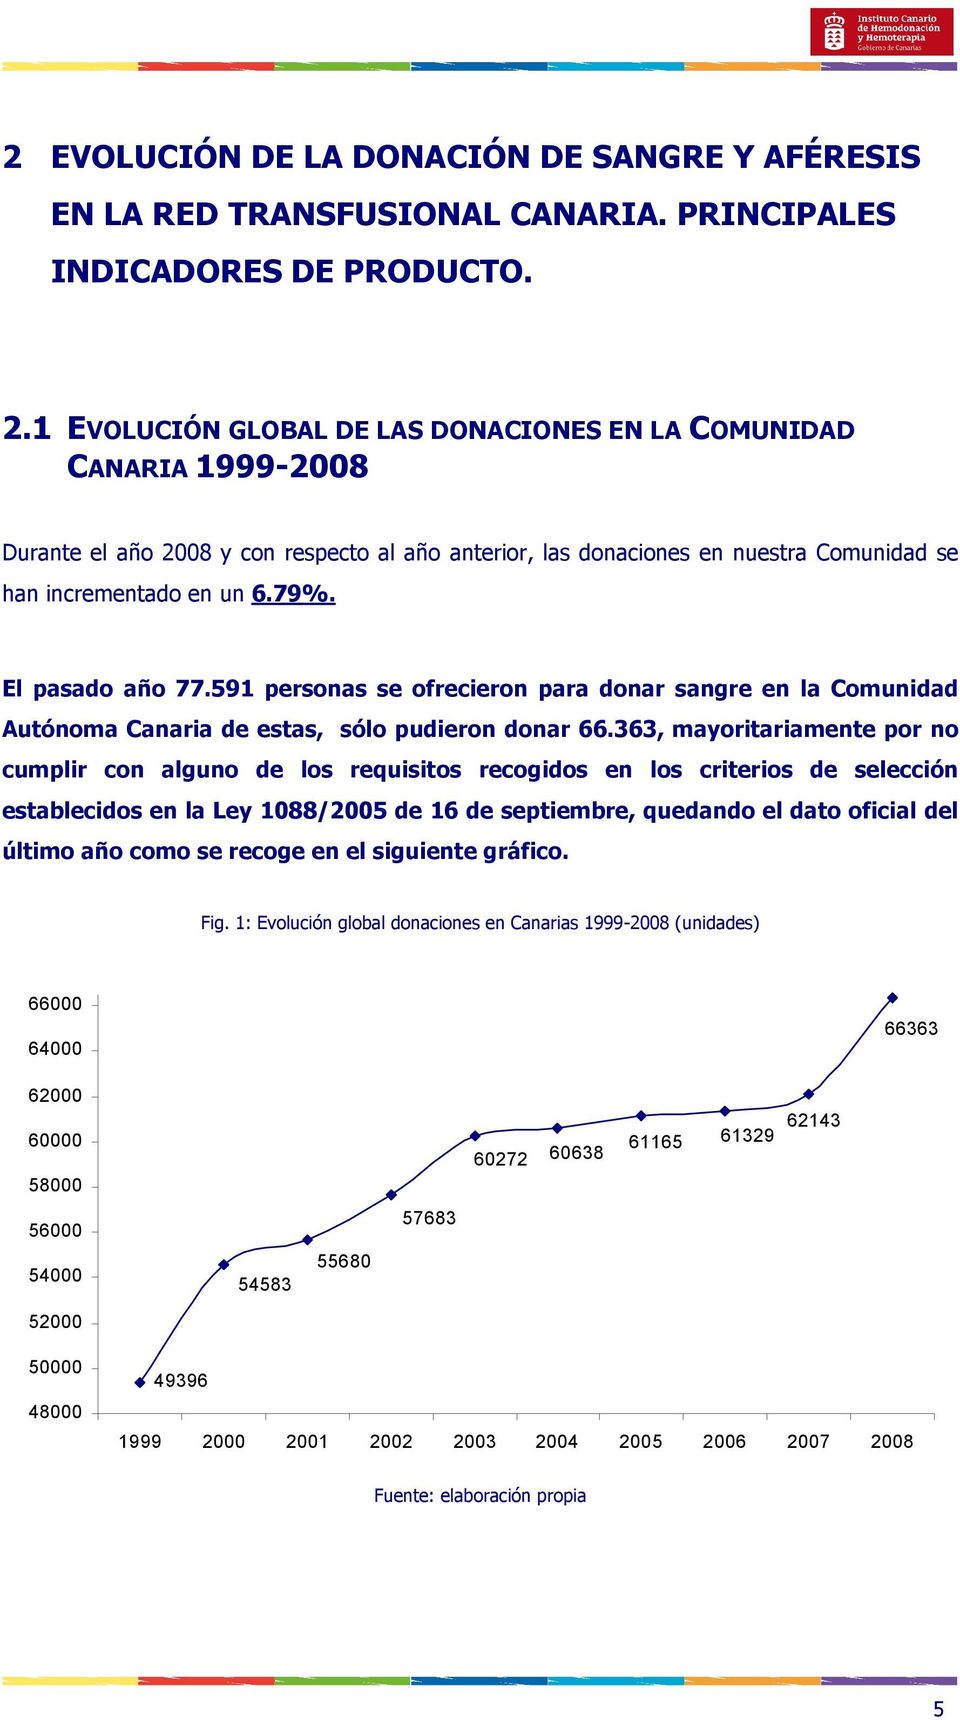 El pasado año 77.591 personas se ofrecieron para donar sangre en la Comunidad Autónoma Canaria de estas, sólo pudieron donar 66.